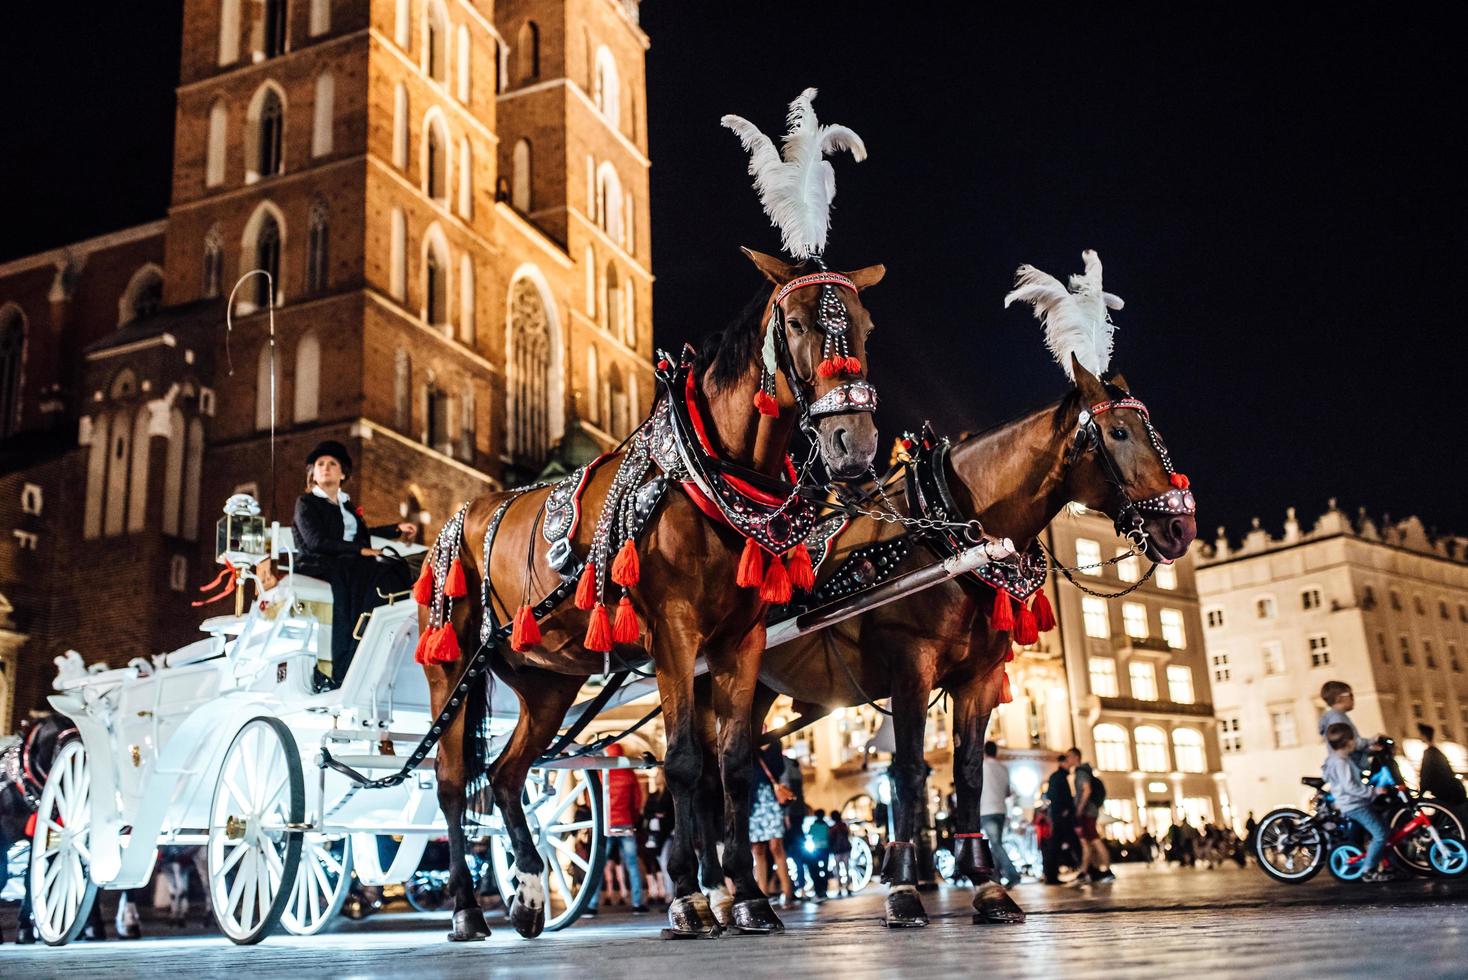 krakow, polen 2017 - nattens gamla torg i krakow med hästvagnar foto